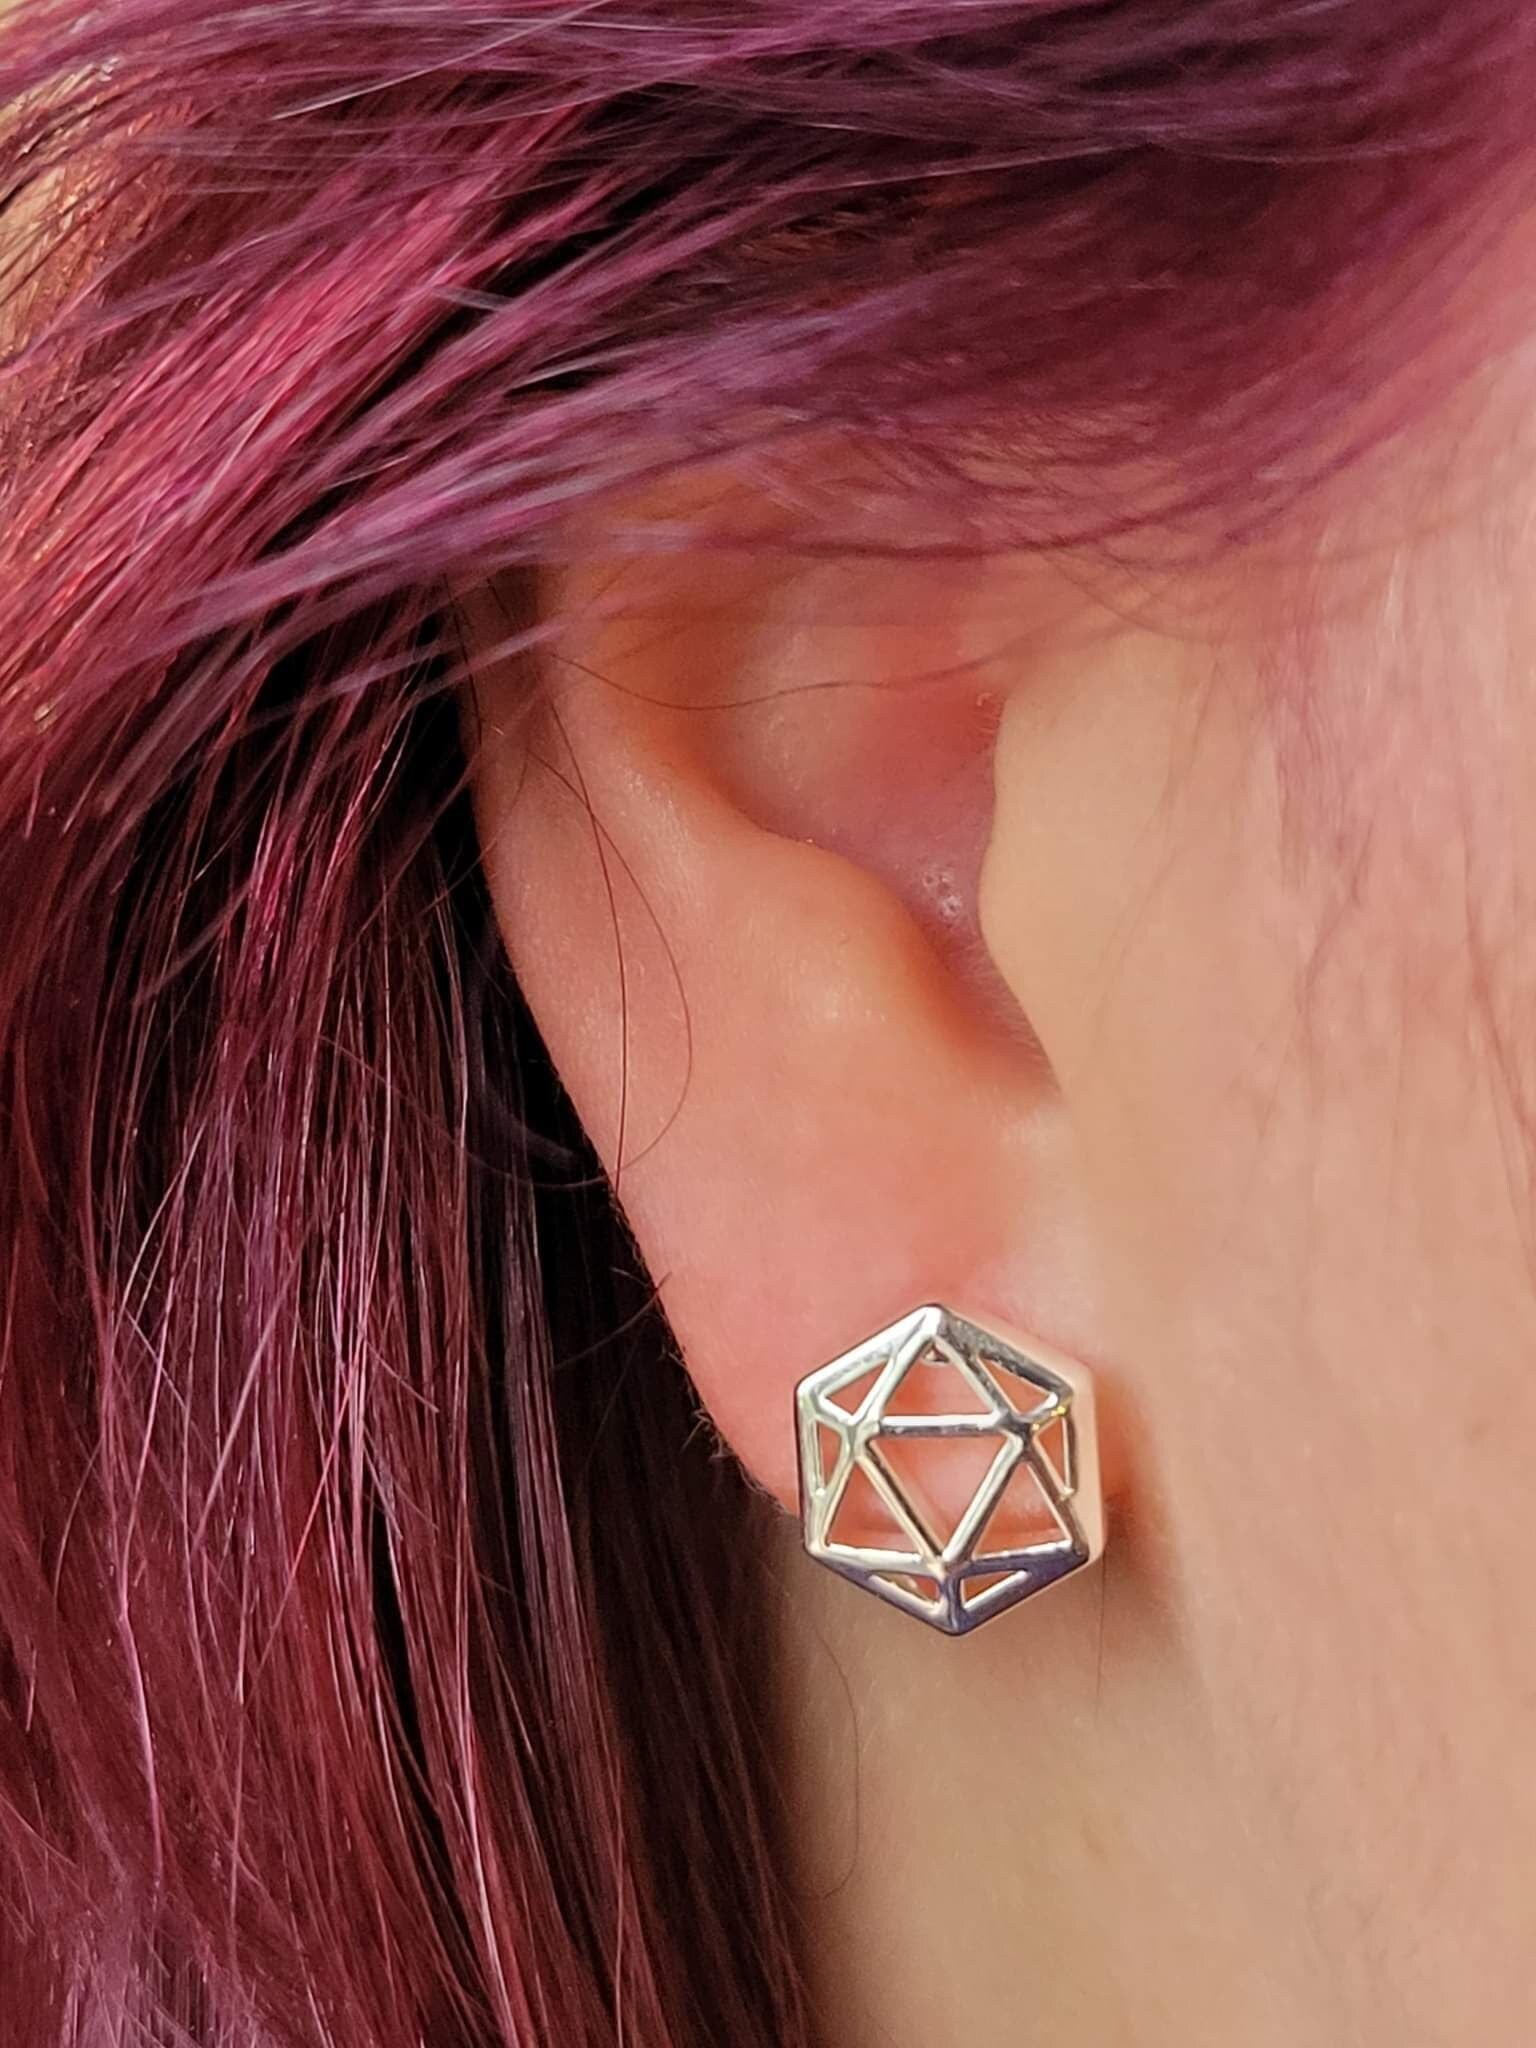 D20 Dice stud earrings, Golden dice earrings with fiery orange opal